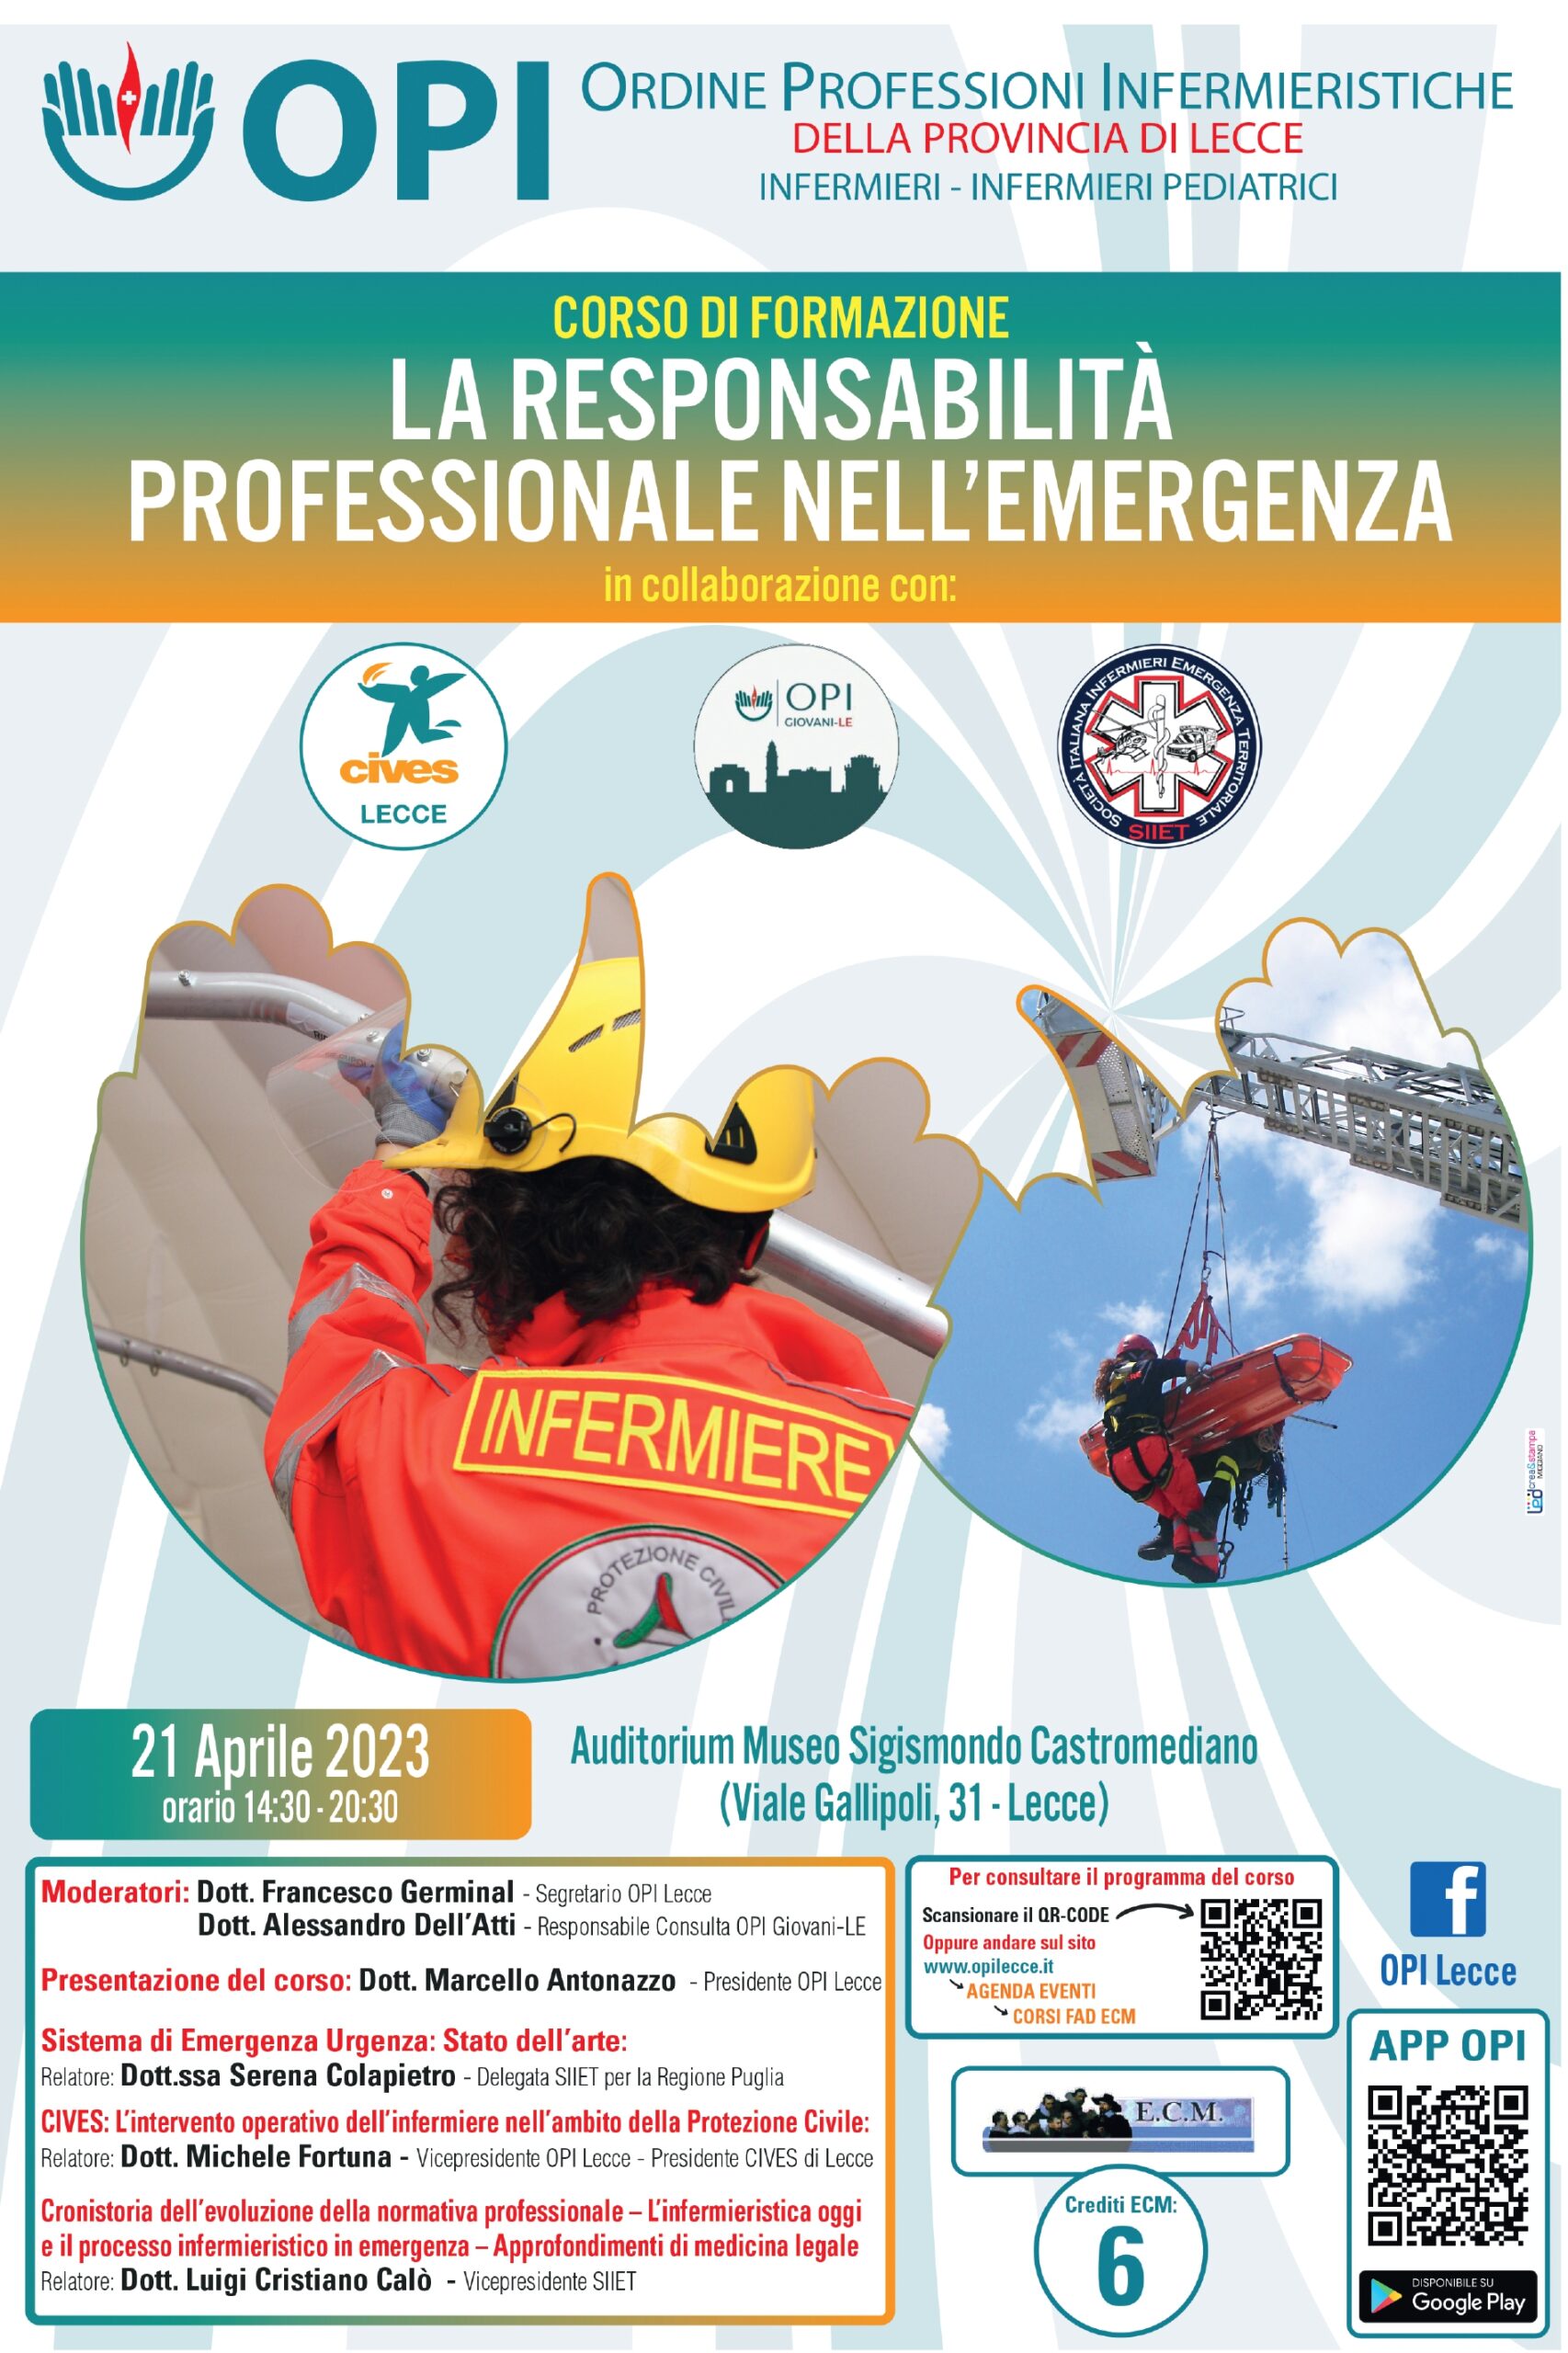 CIVES Lecce: La Responsabilità Professionale nell’Emergenza – Corso ECM